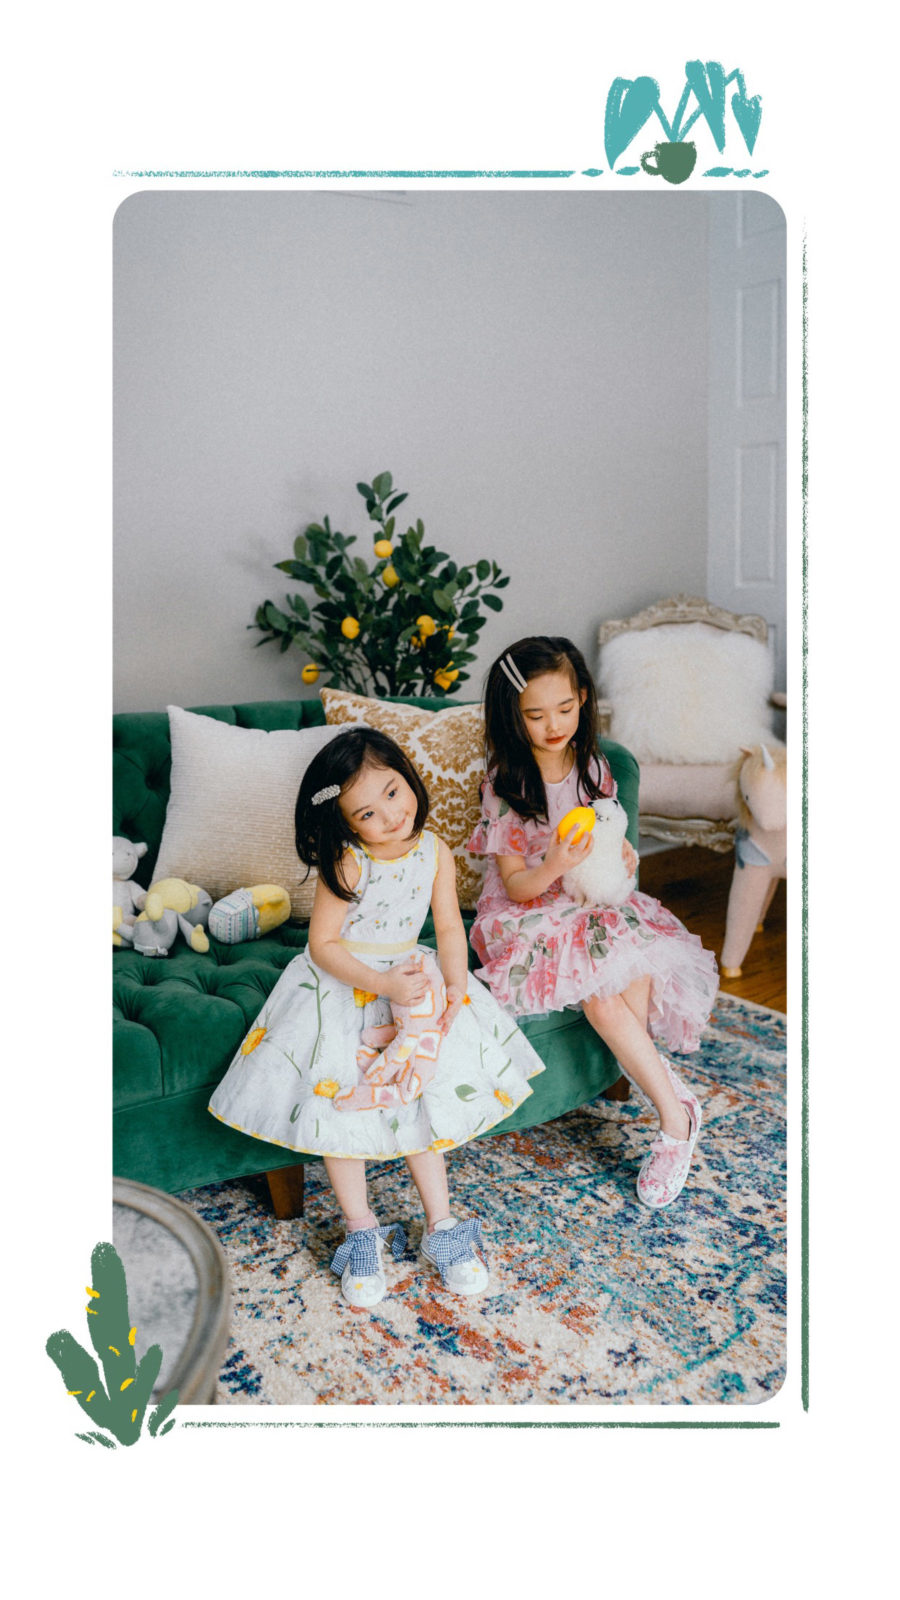 kids fashion trends for spring 2019 - kids floral dresses, kids fashion trends, melijoe kids clothing // Notjessfashion.com